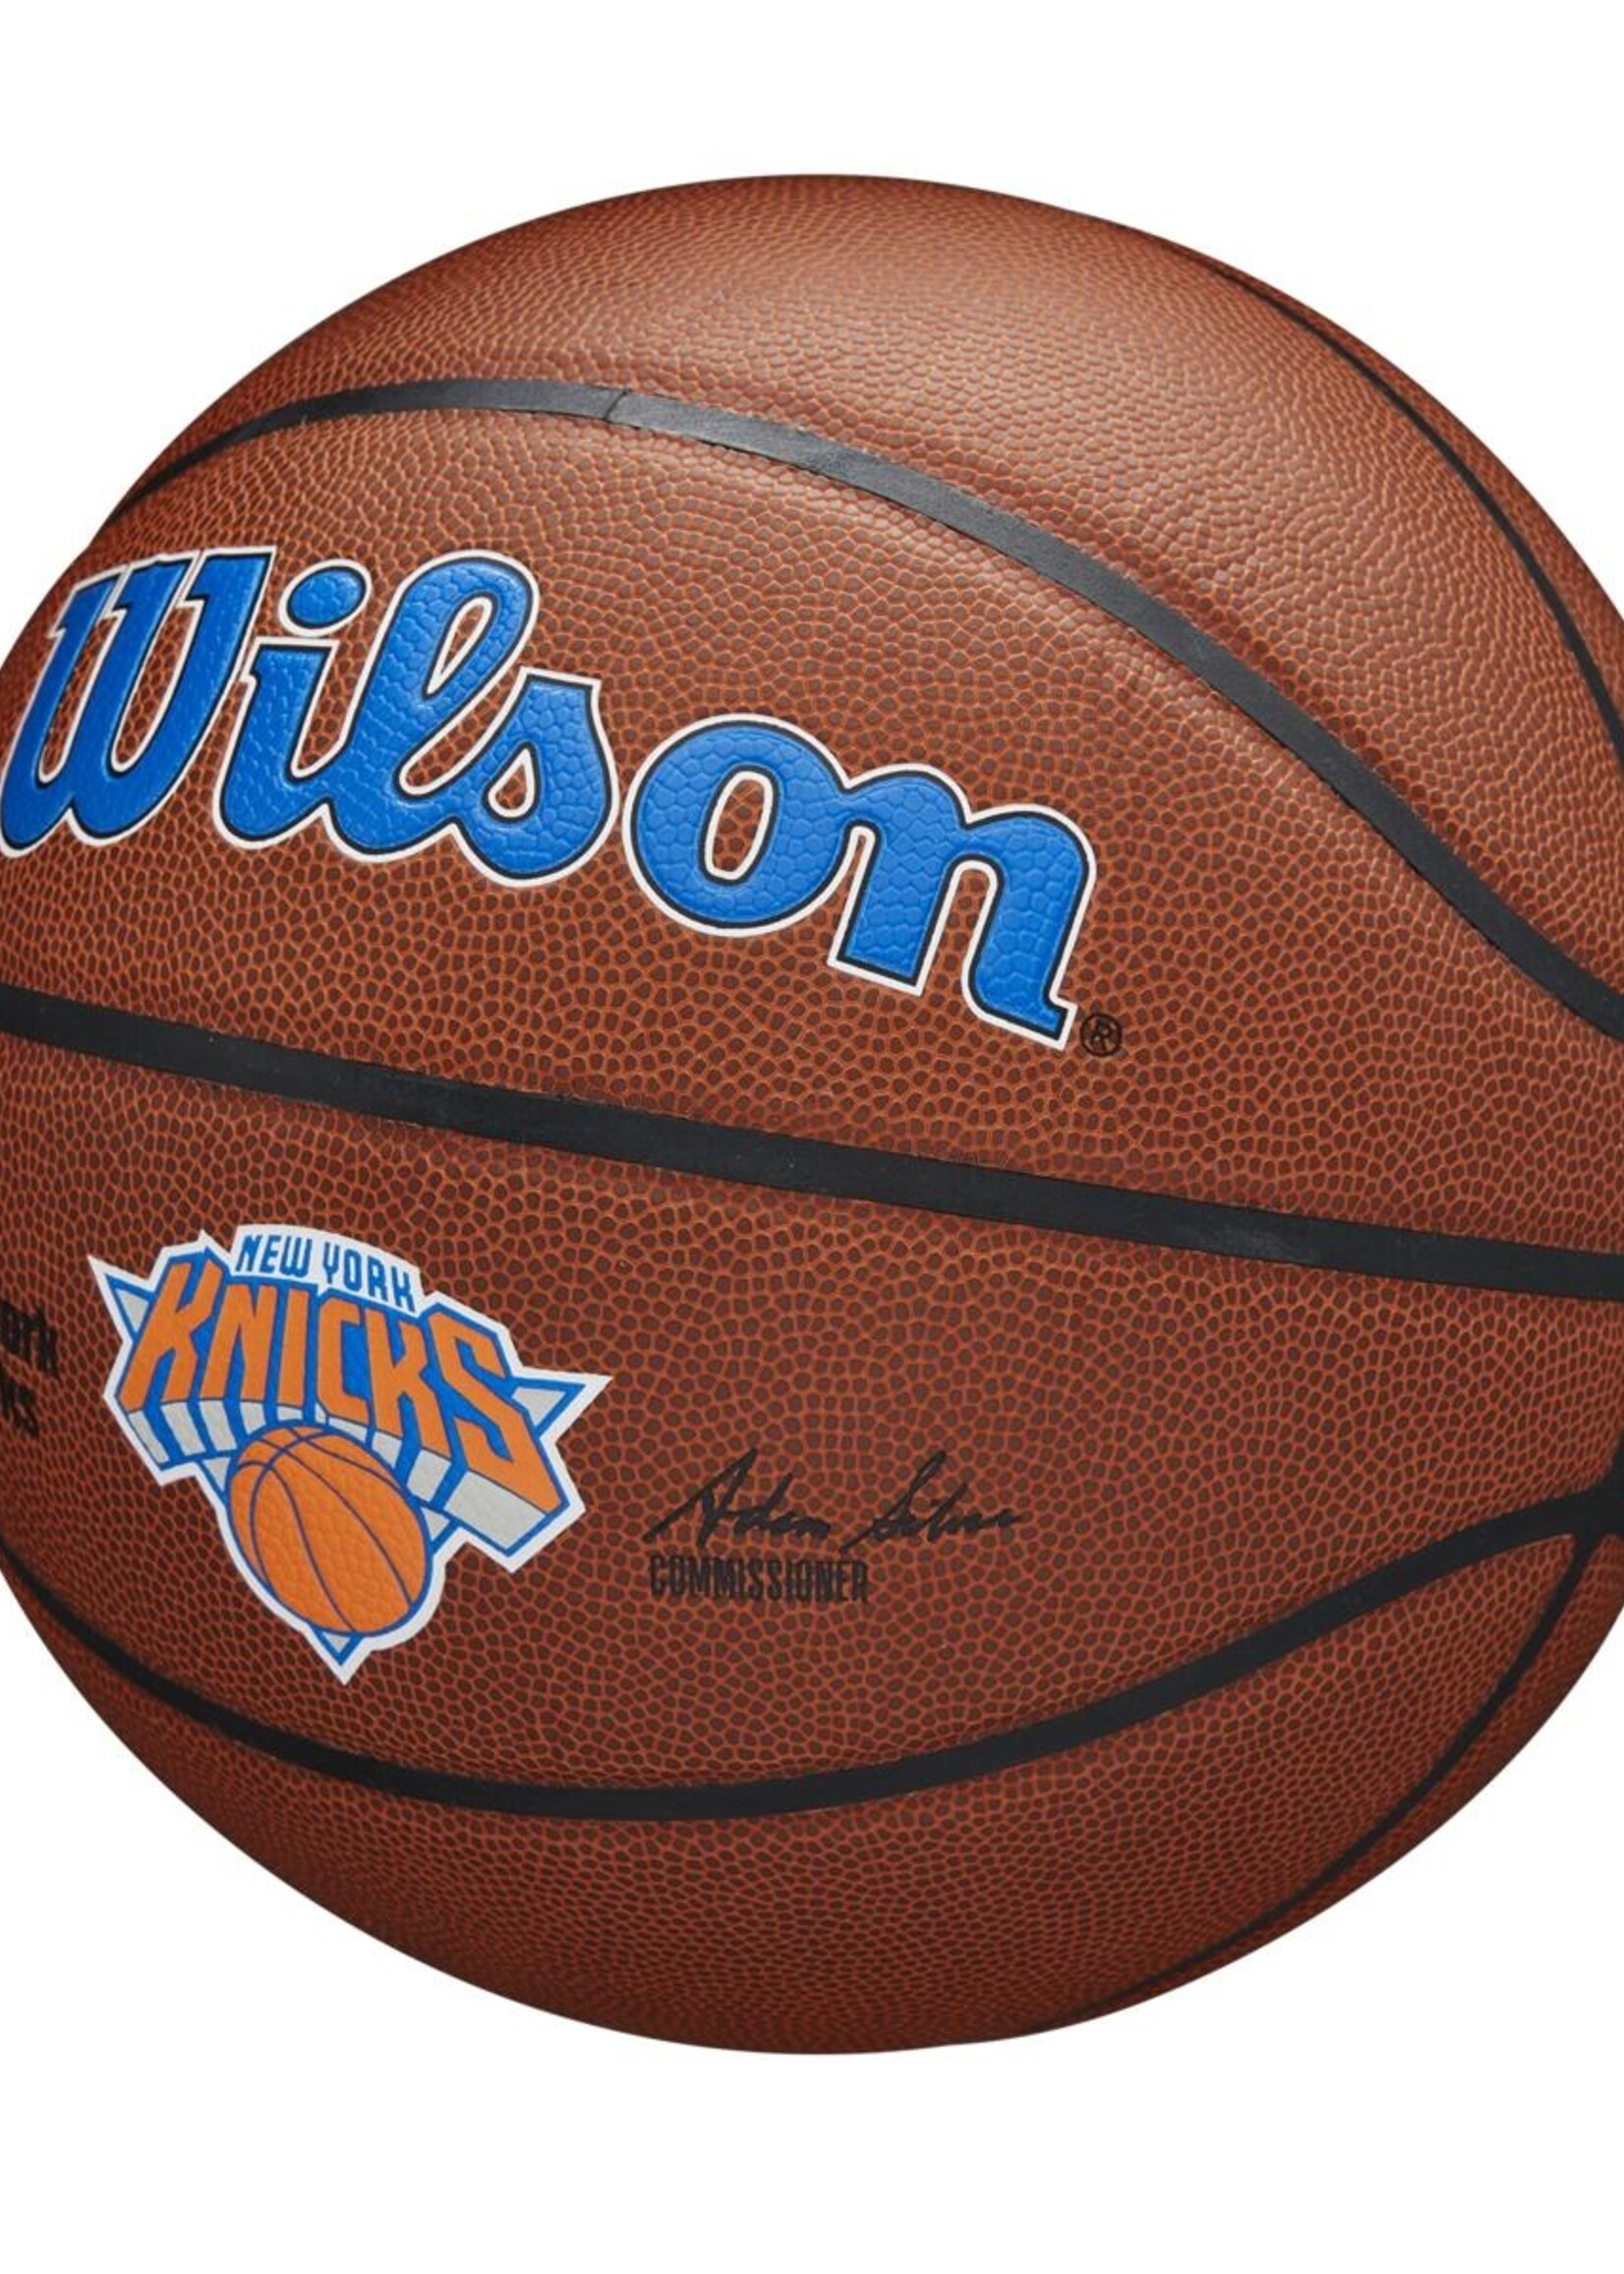 Wilson Wilson NBA NEW YORK KNICKS Composite Indoor / Outdoor Basketbal (7)